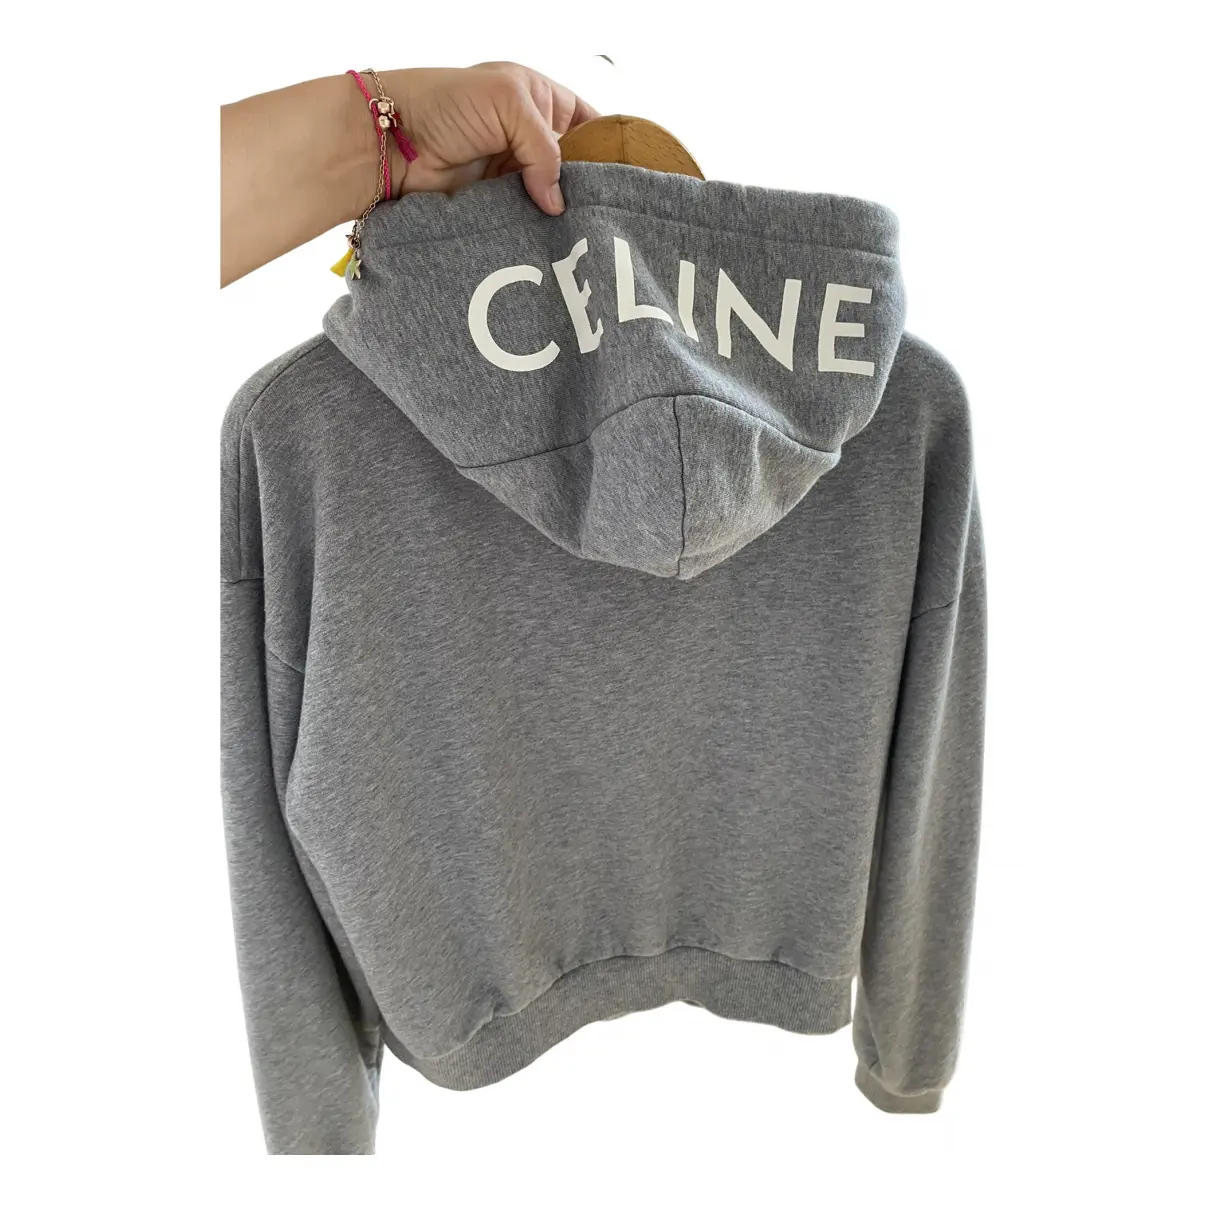 Buy Celine Sweatshirt online